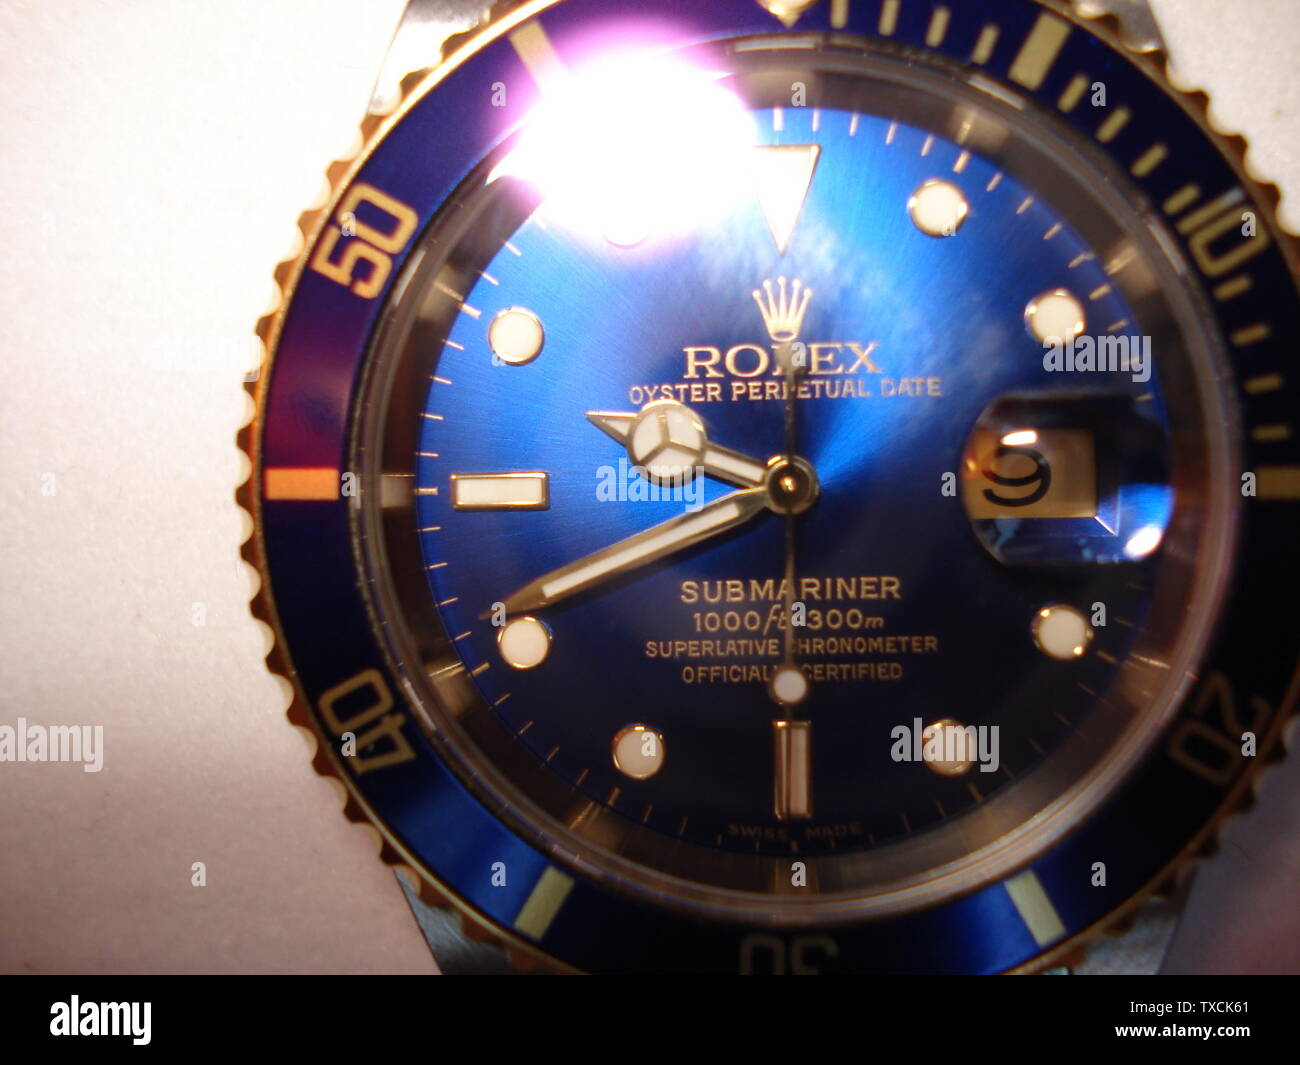 Un reloj Rolex Oyster Perpetual Date Submariner; 12 de de 2007 (según datos Exif); obra Propia del usuario de English pedia Usuario:Eternalsleeper Fotografía de stock - Alamy